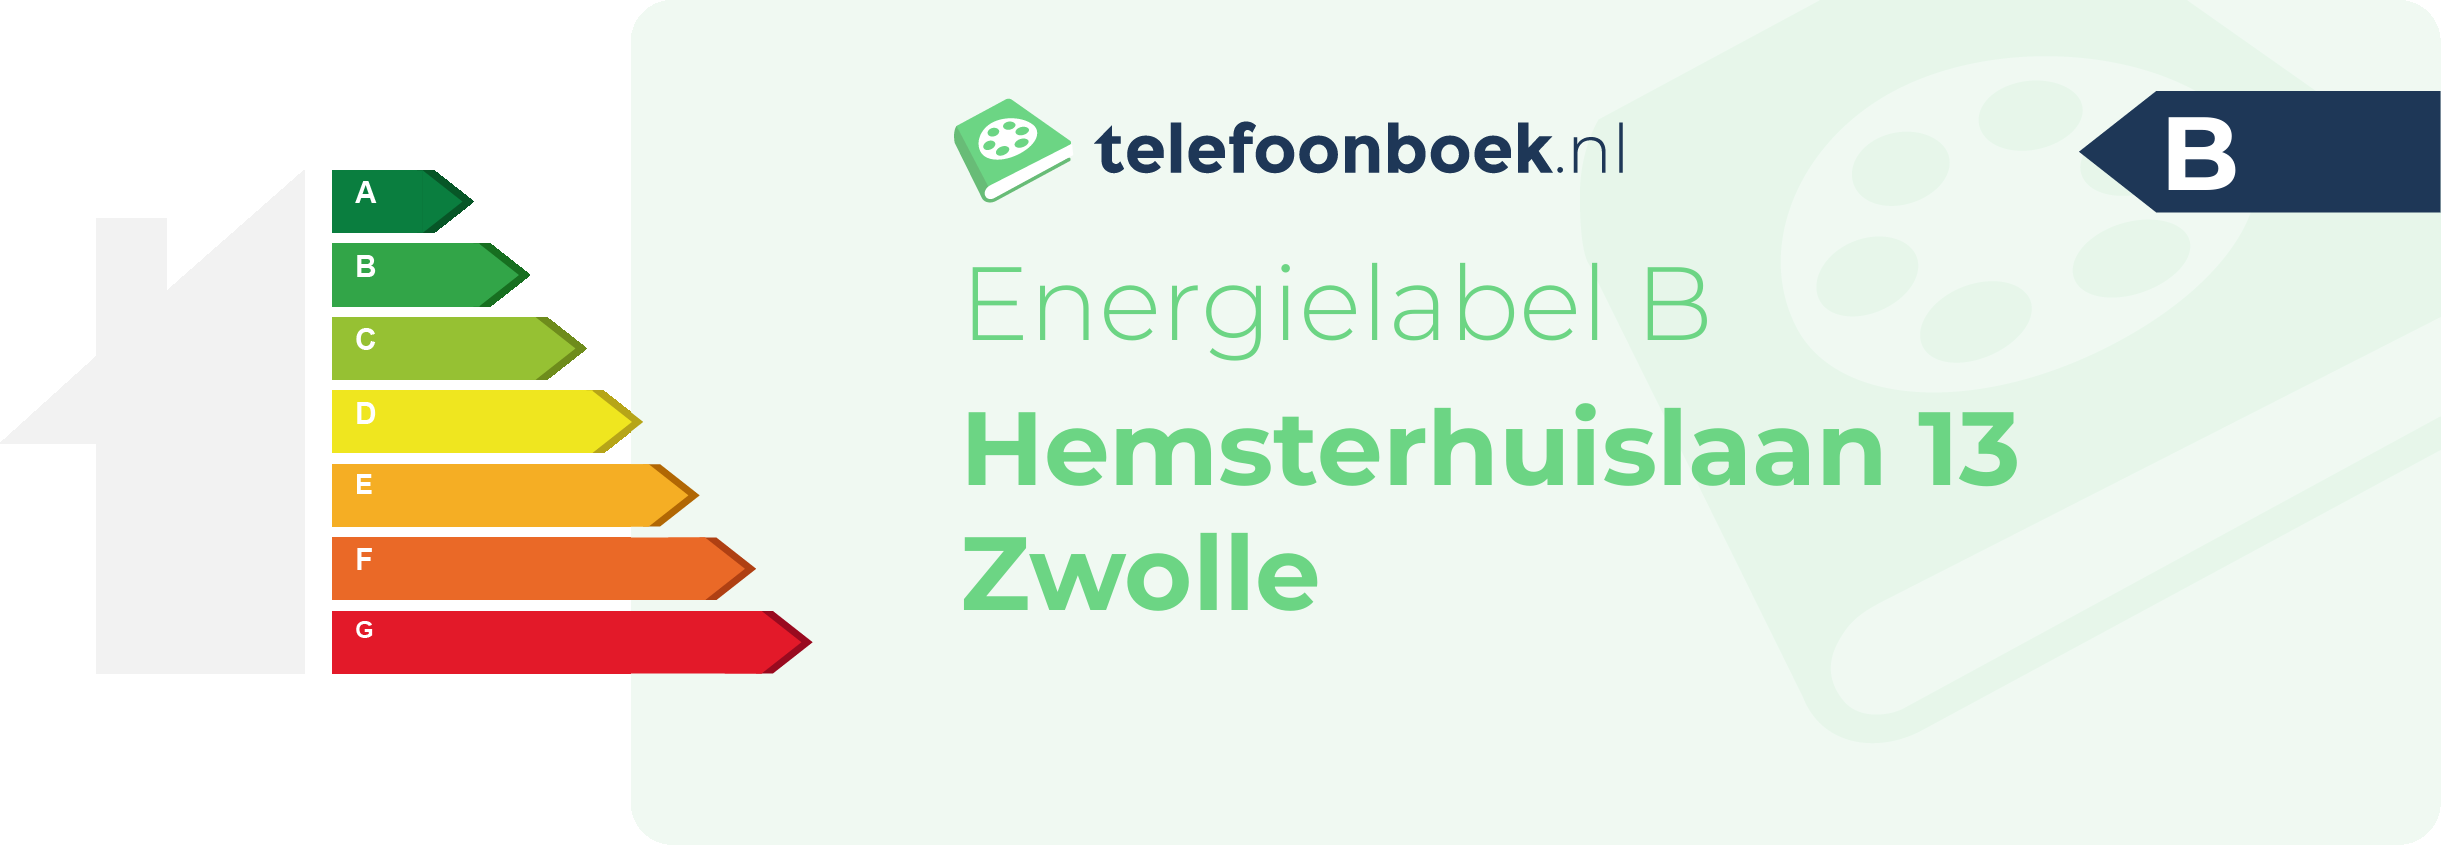 Energielabel Hemsterhuislaan 13 Zwolle